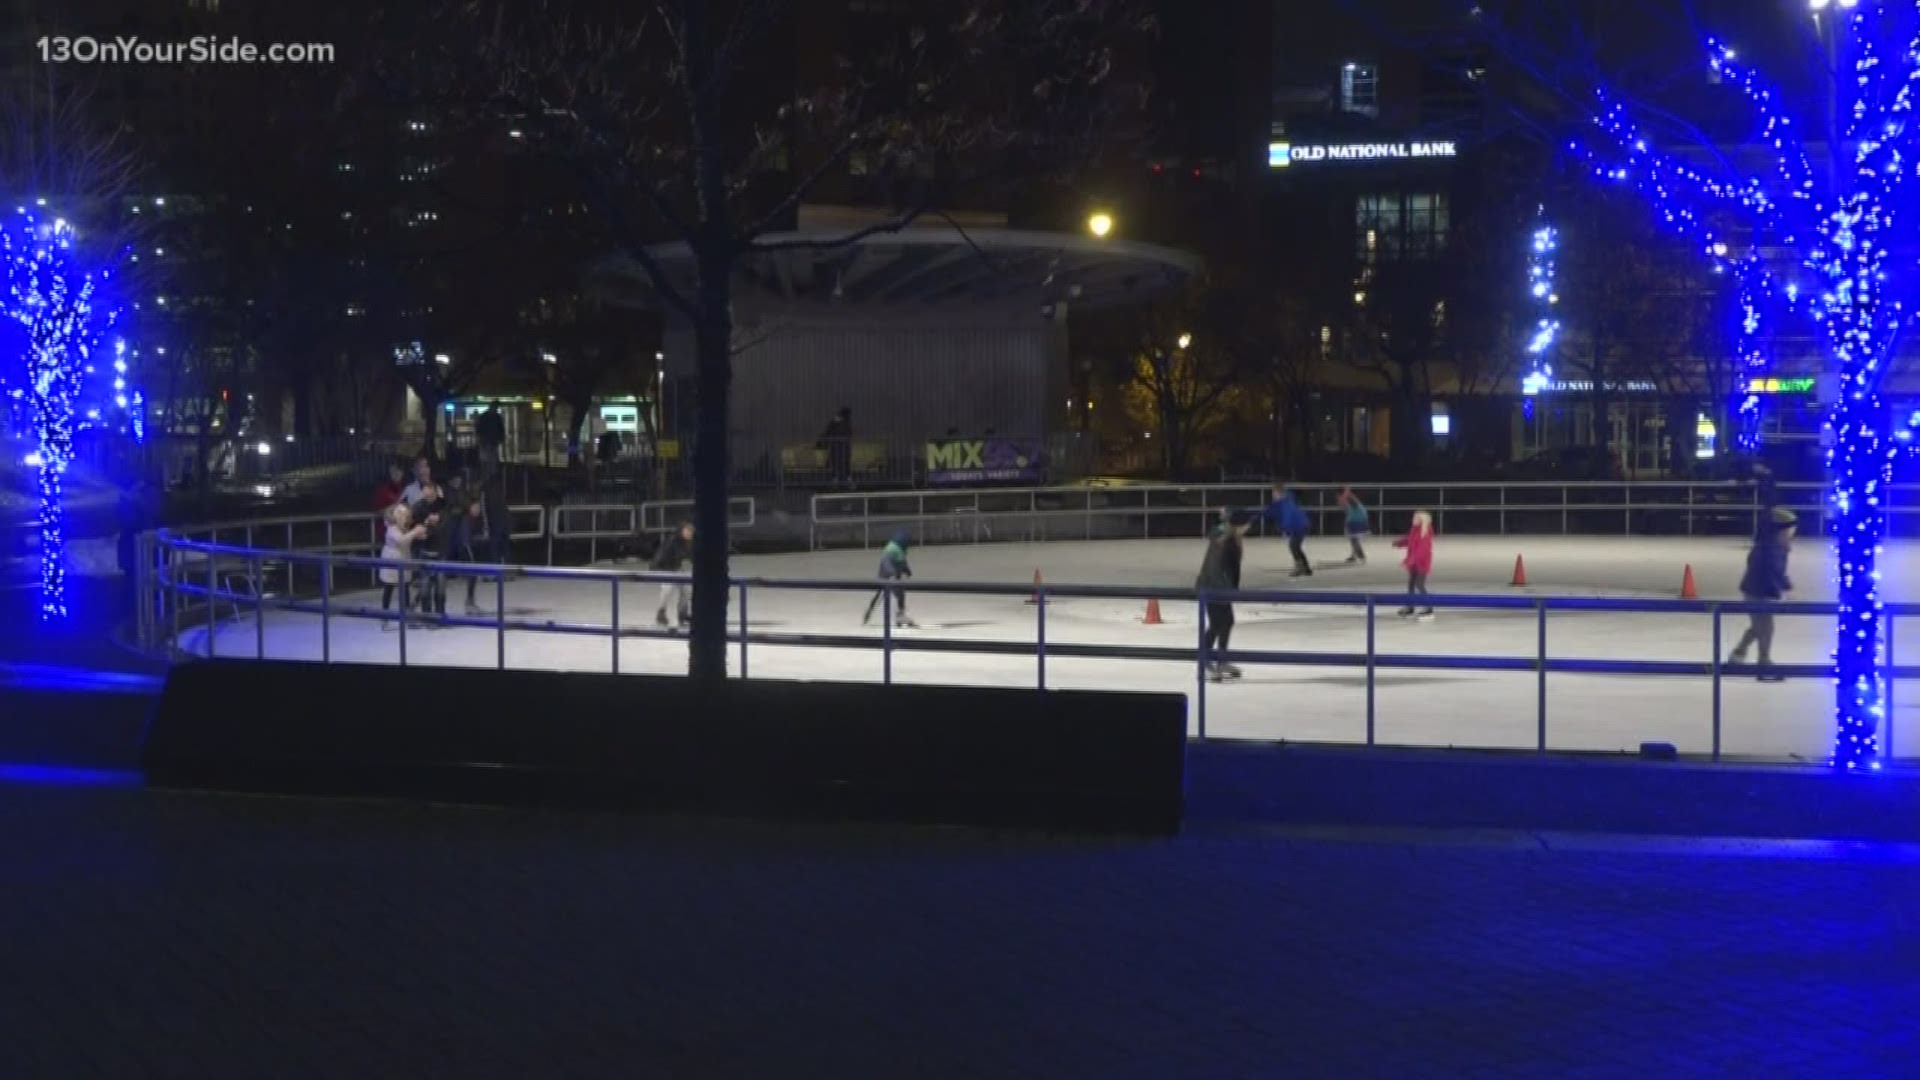 The 2019/2020 season of ice skating at Rosa Parks Circle will run from Nov. 29 - Feb. 23.